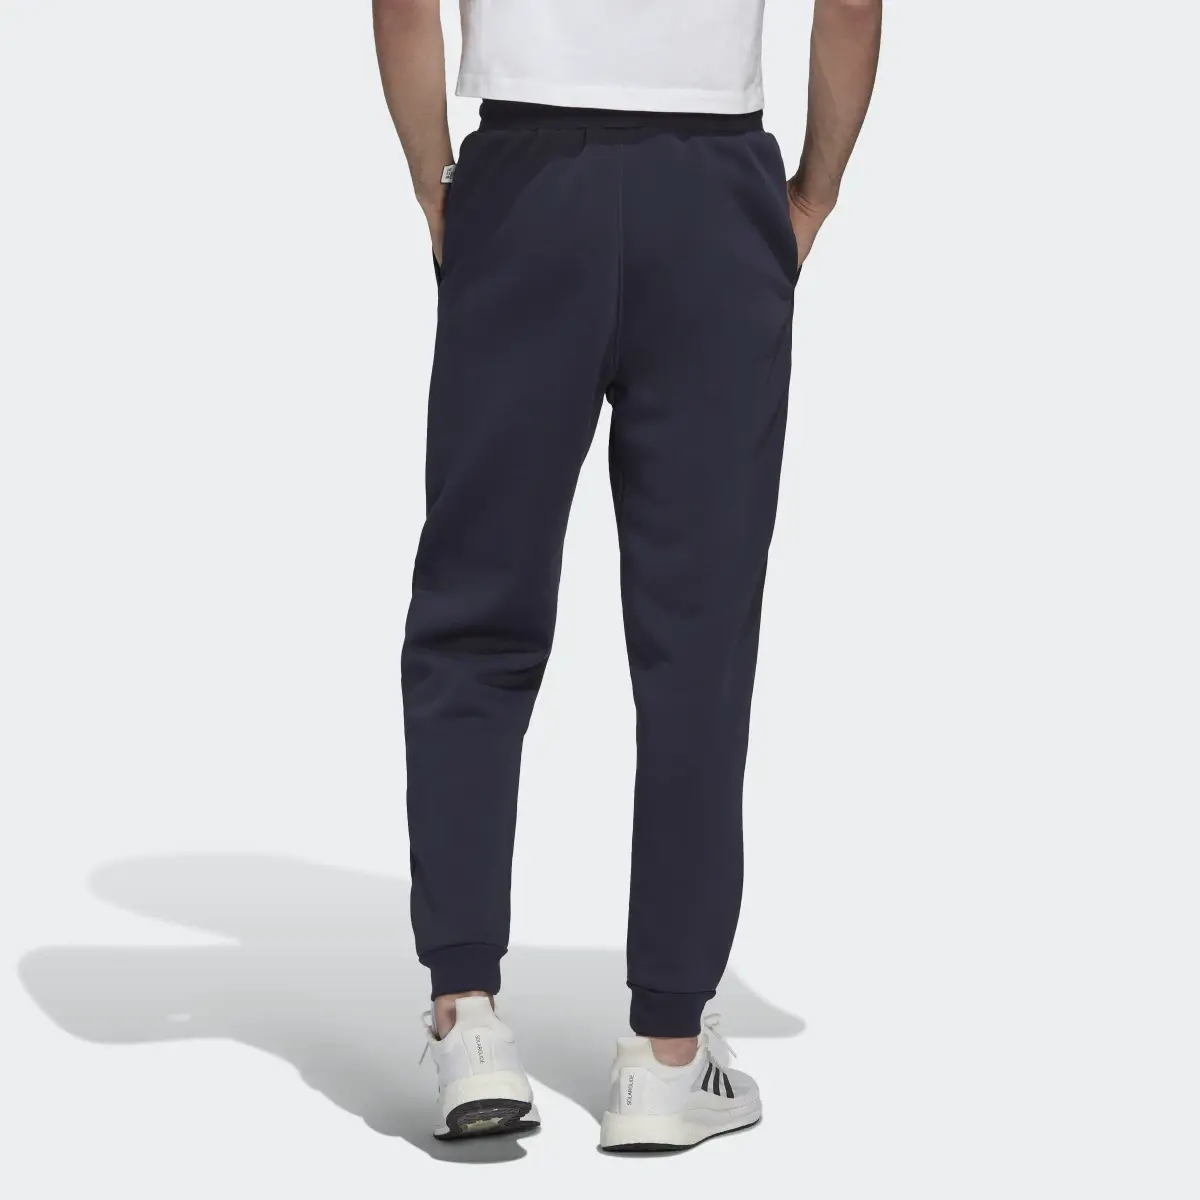 Adidas Studio Lounge Fleece Pants. 2